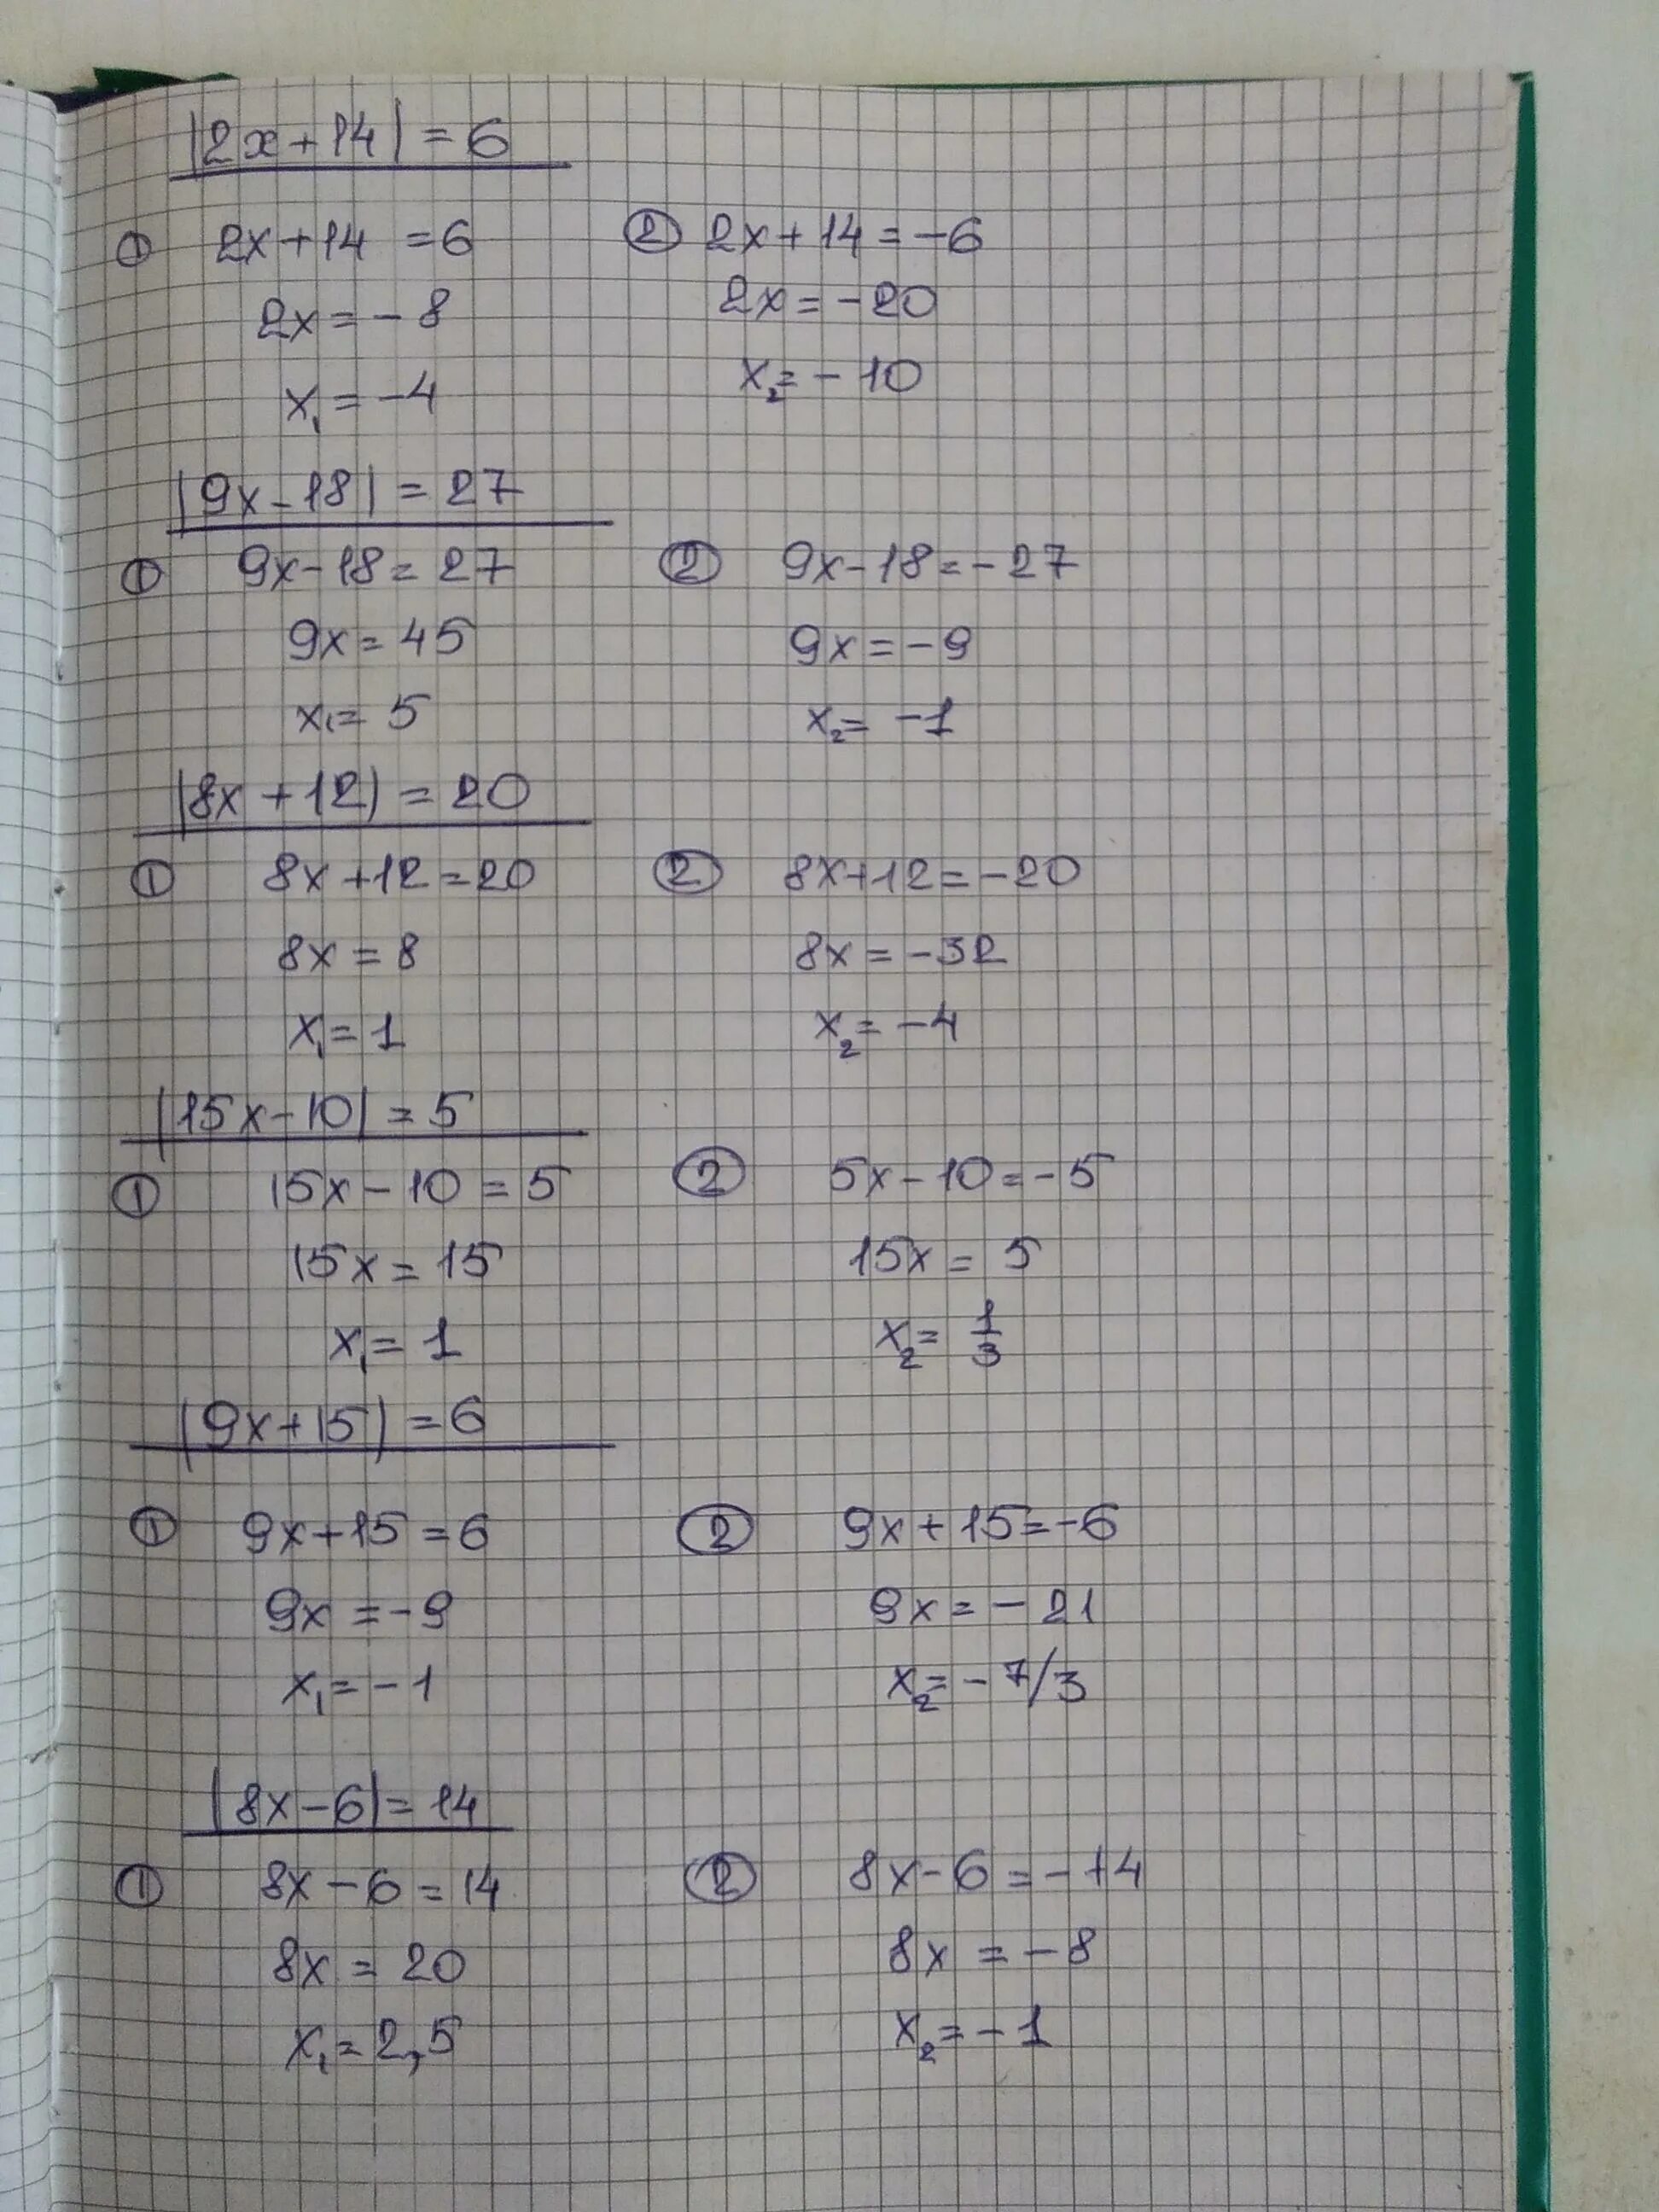 10х 14. 14х+2х 6-х. Решение уравнения - 6х=9+х*х. 14 = 2х + 6. Уравнение х=14=6.